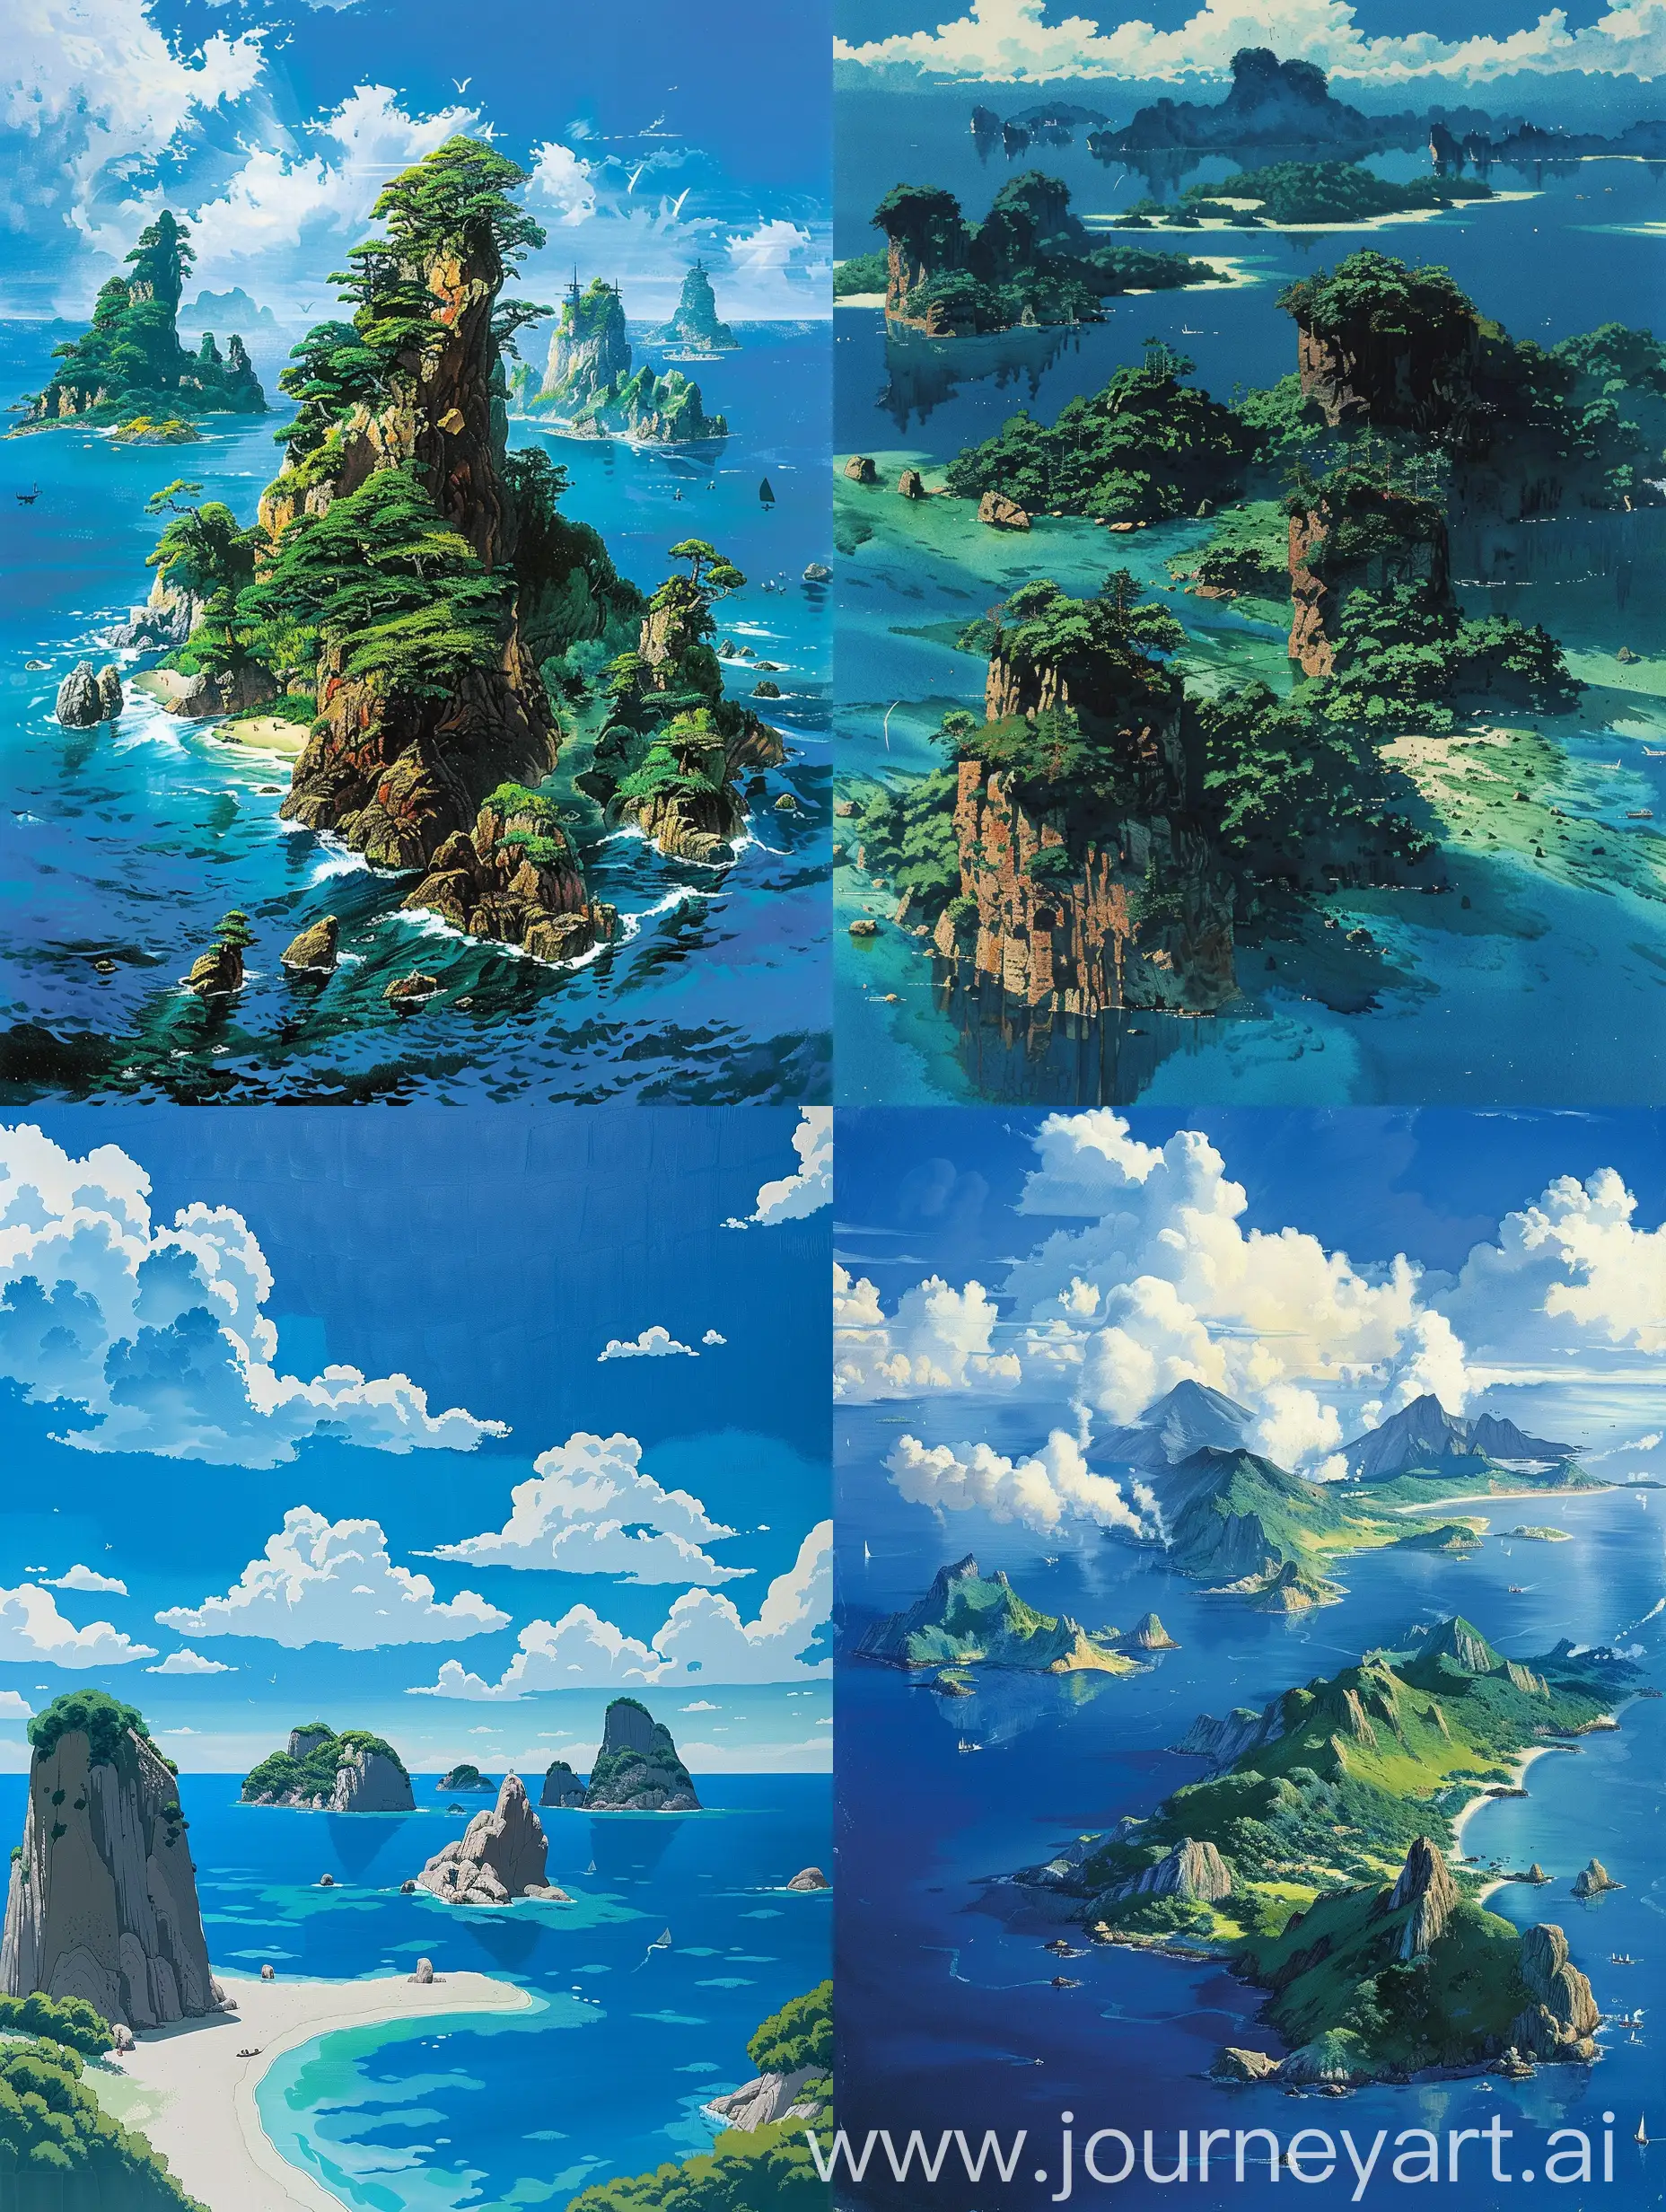 一个岛屿群，一共有9个小岛，宫崎骏画风